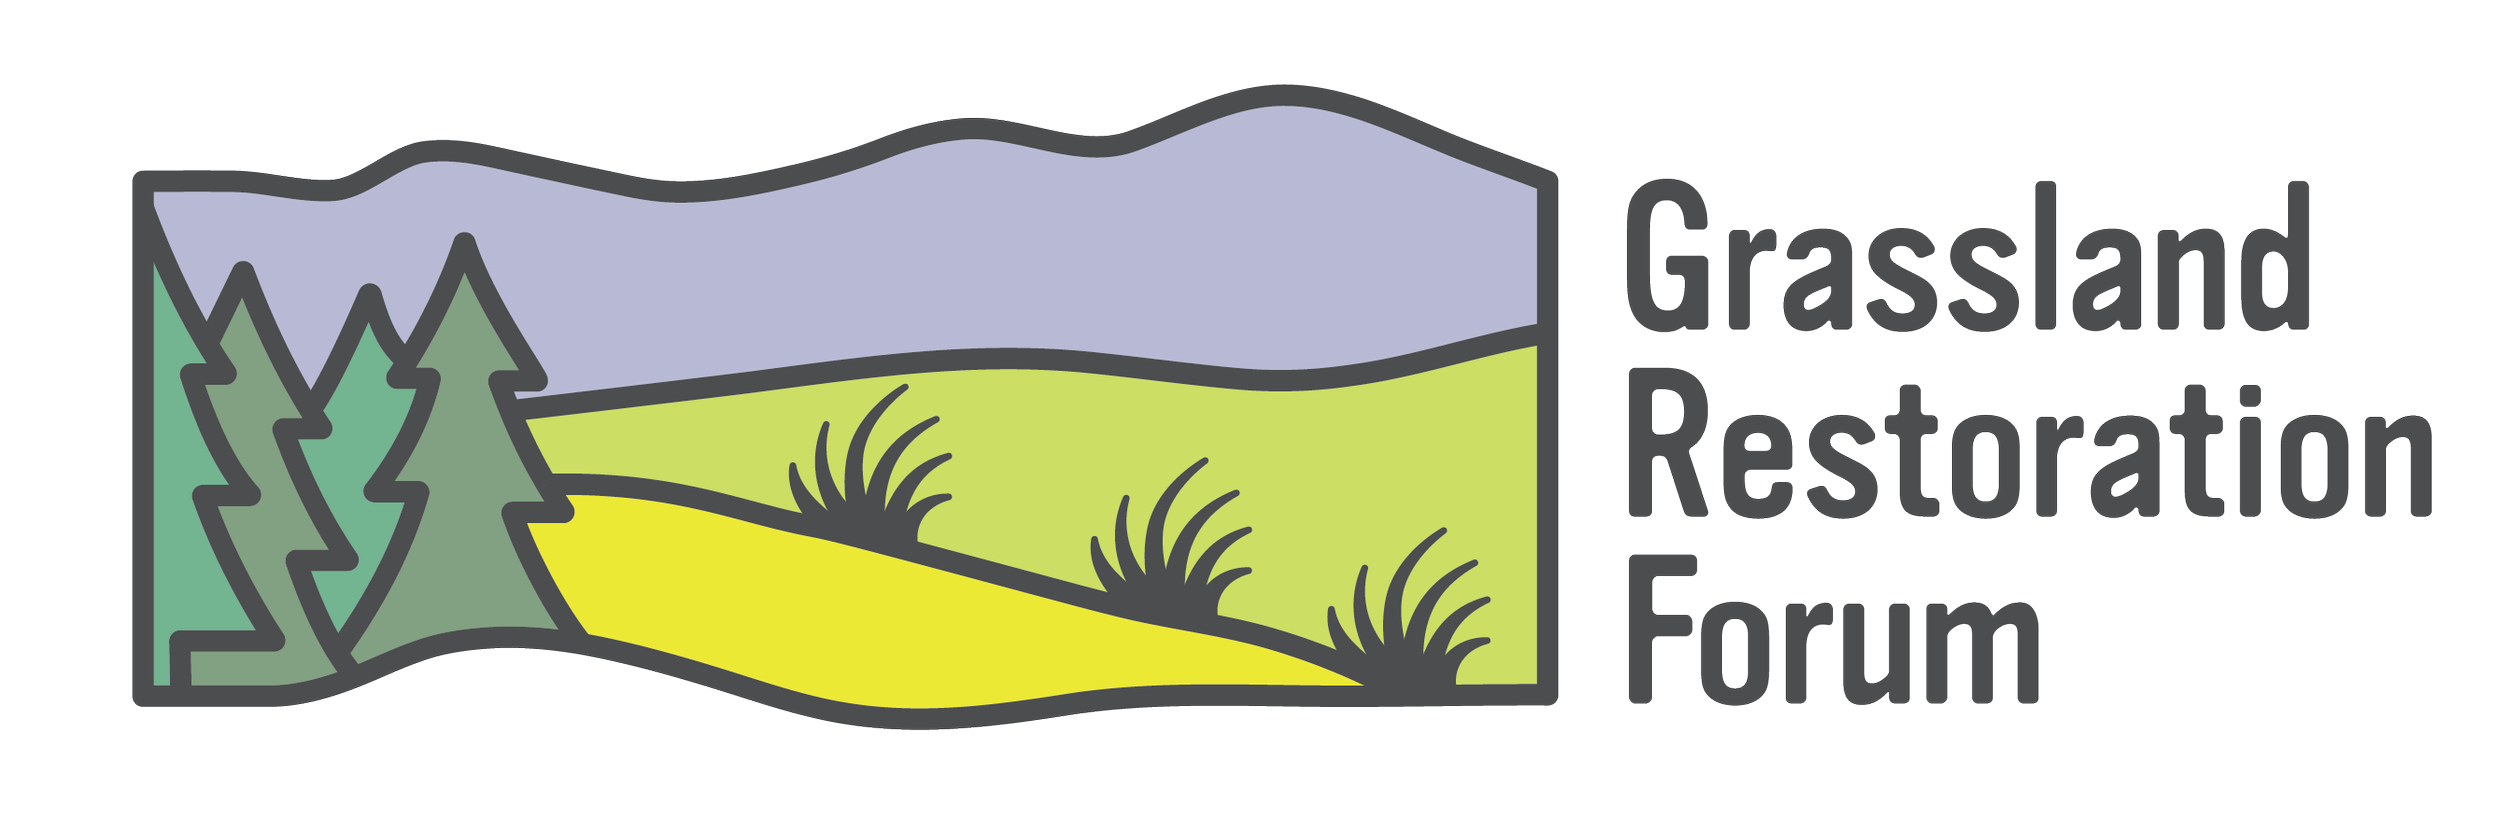 Grassland Restoration Forum_Logo_Final__CMYK_Landscape w.png